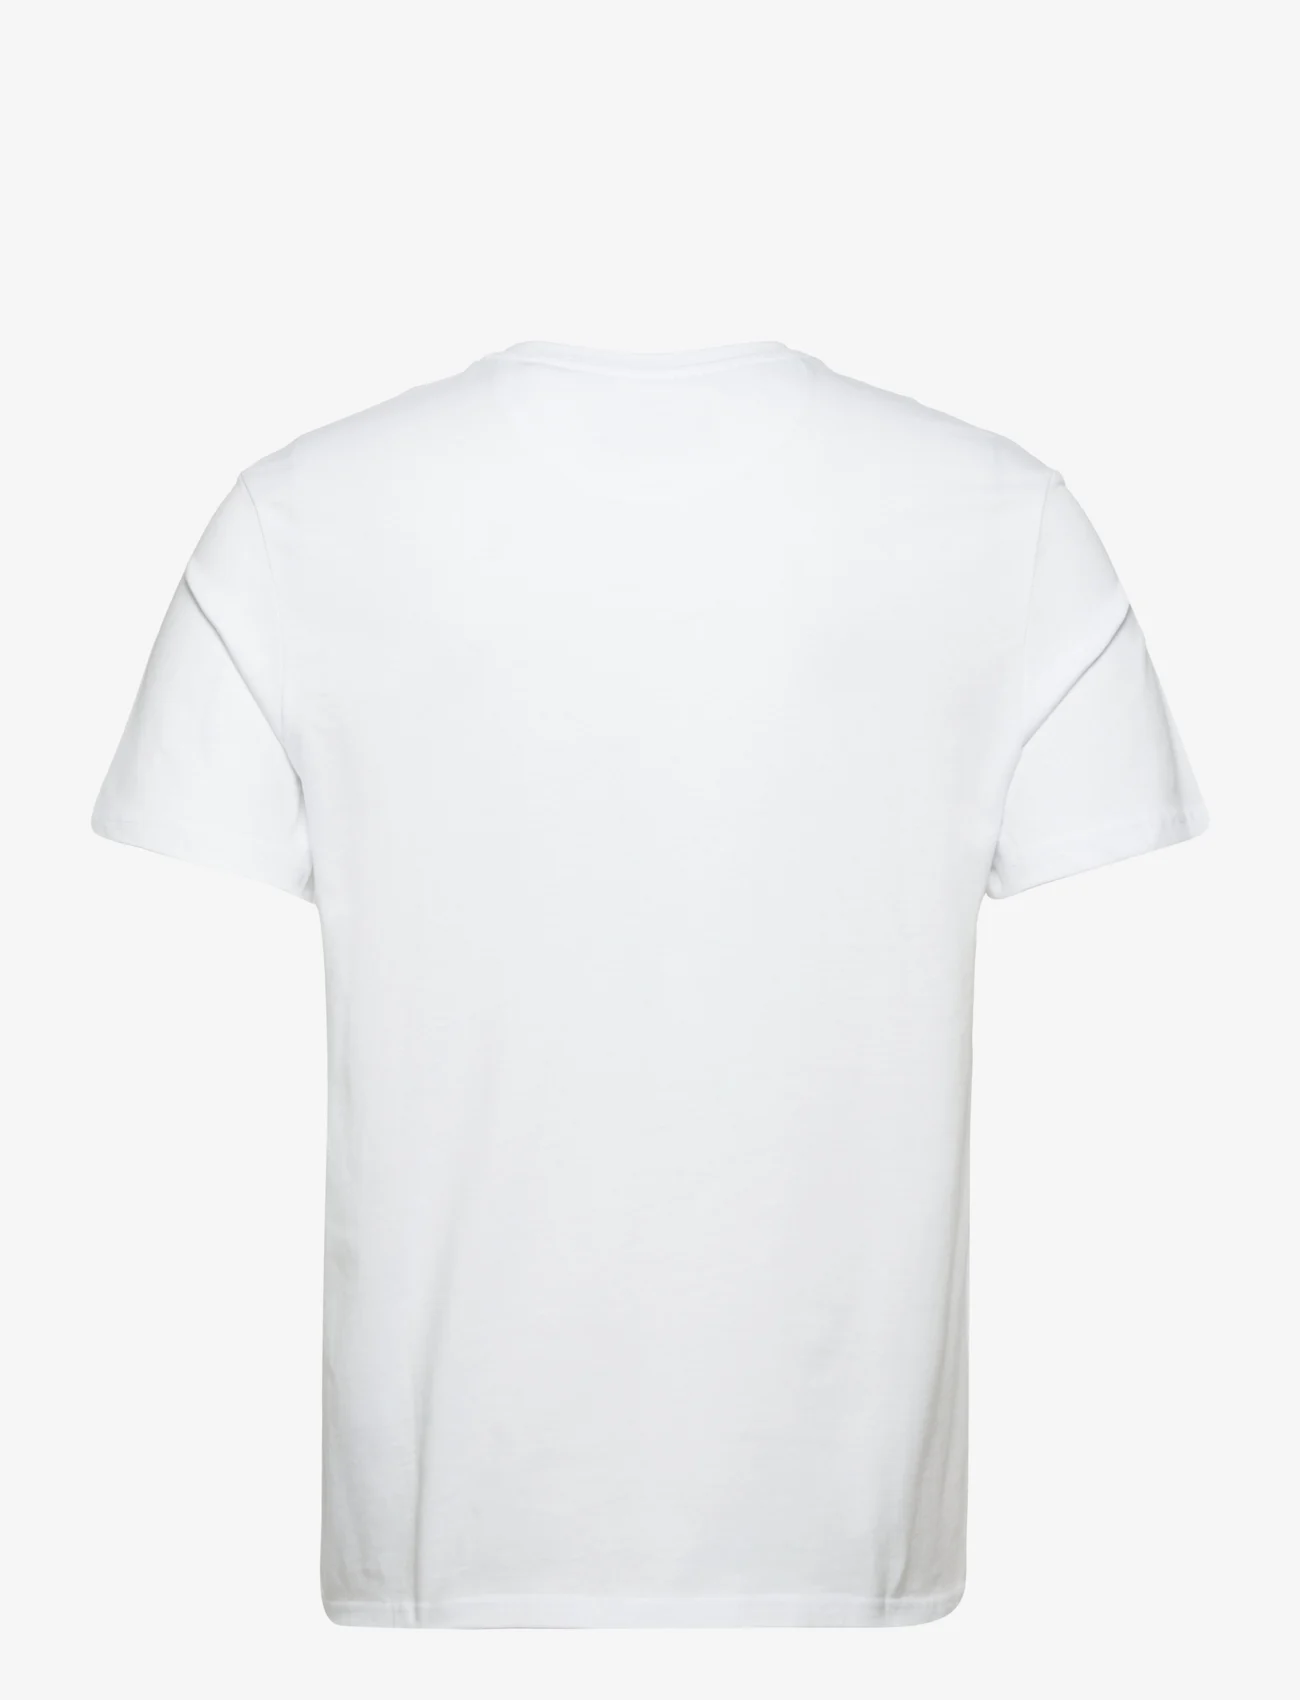 Lyle & Scott - Contrast Pocket T-Shirt - die niedrigsten preise - white/ navy - 1